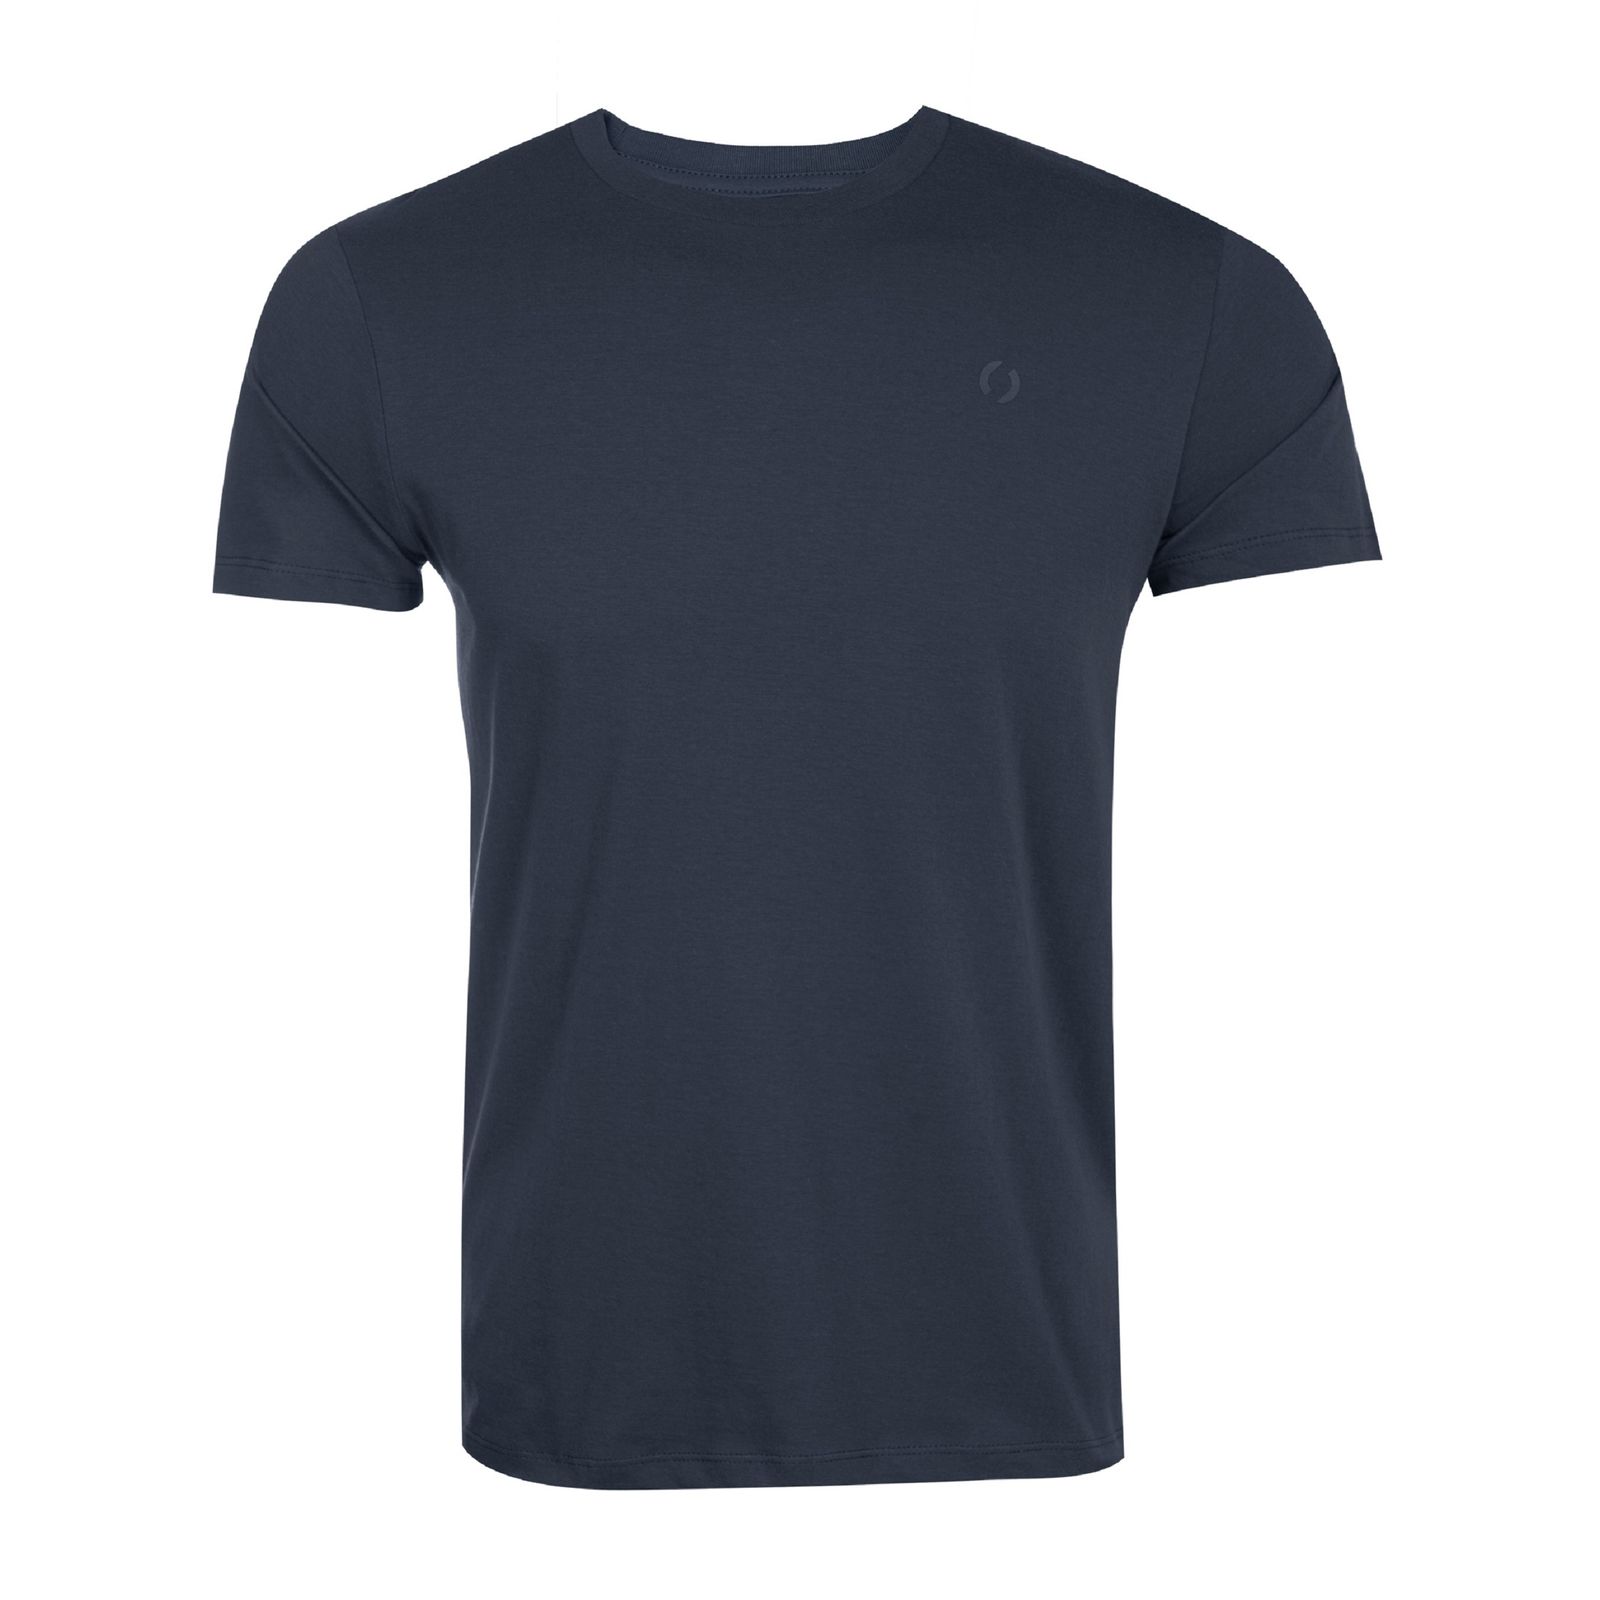 تی شرت آستین کوتاه مردانه جوتی جینز مدل یقه گرد کد 1551334 رنگ طوسی تیره -  - 1